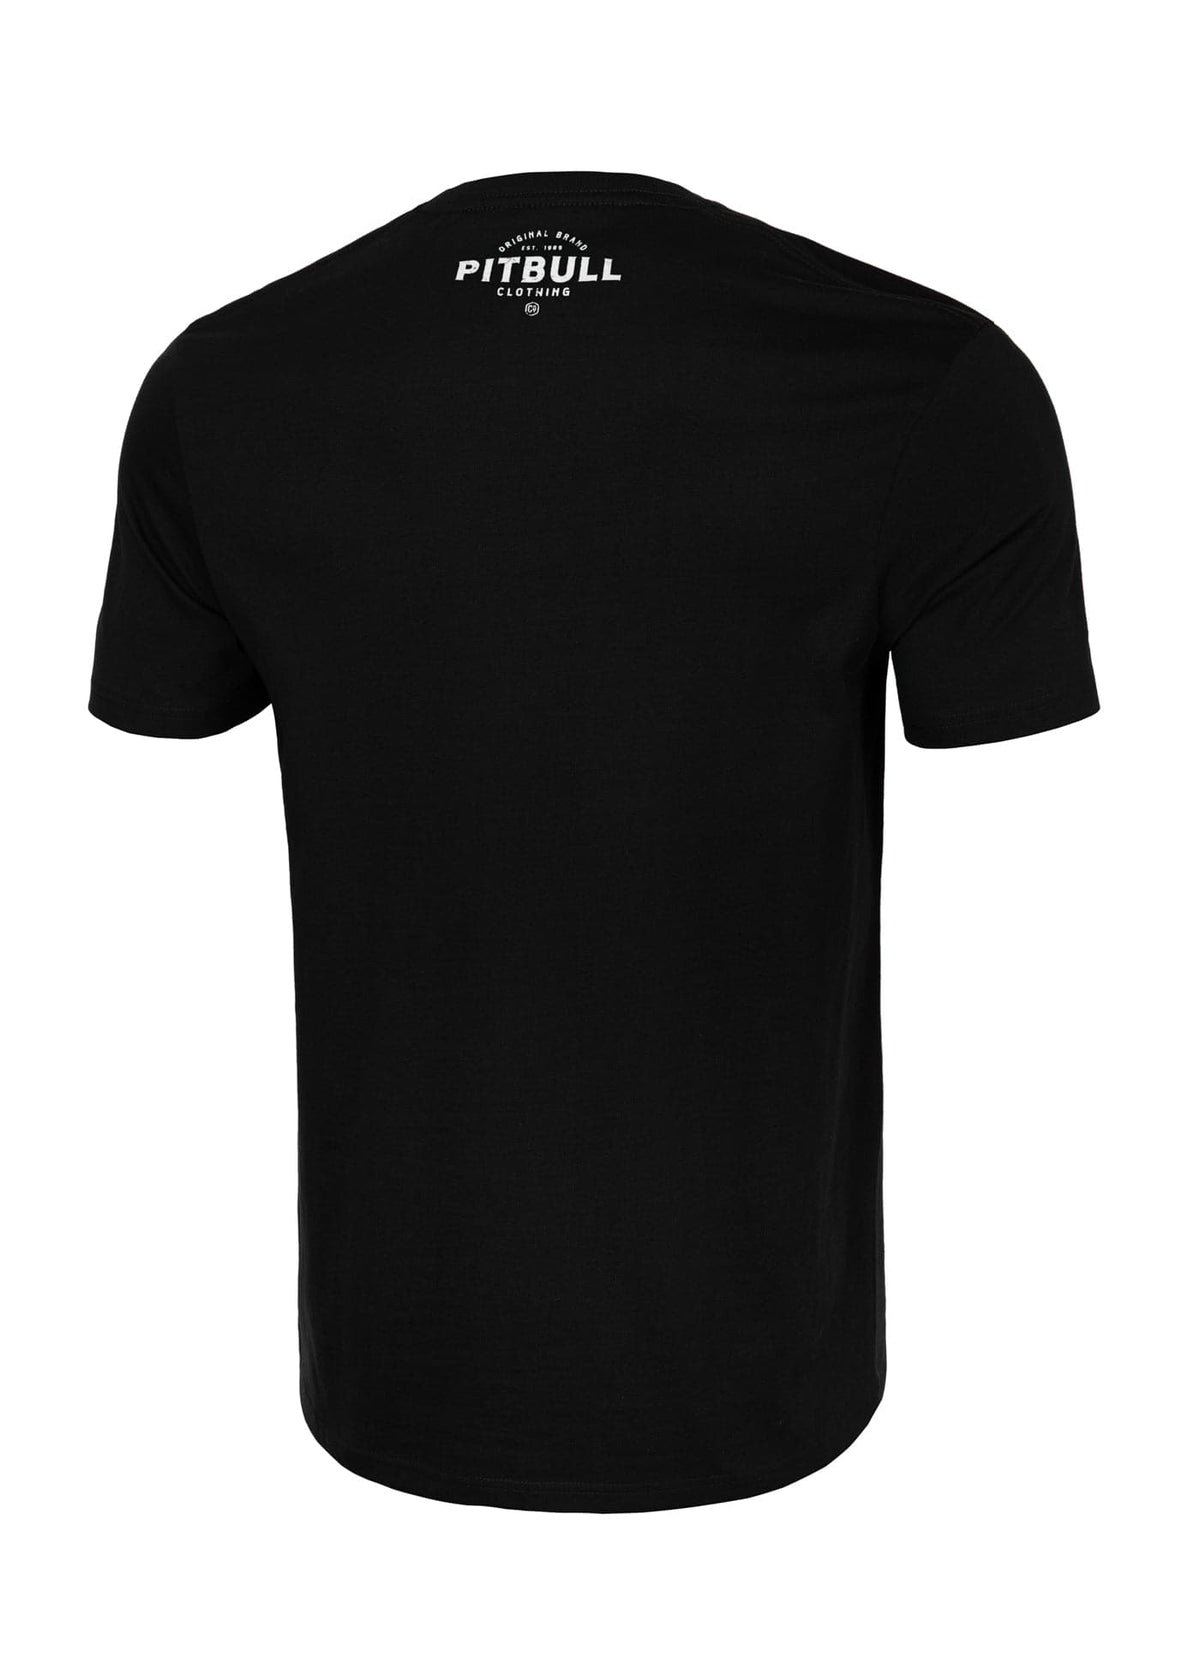 PITBULL CO. Black T-shirt - Pitbullstore.eu